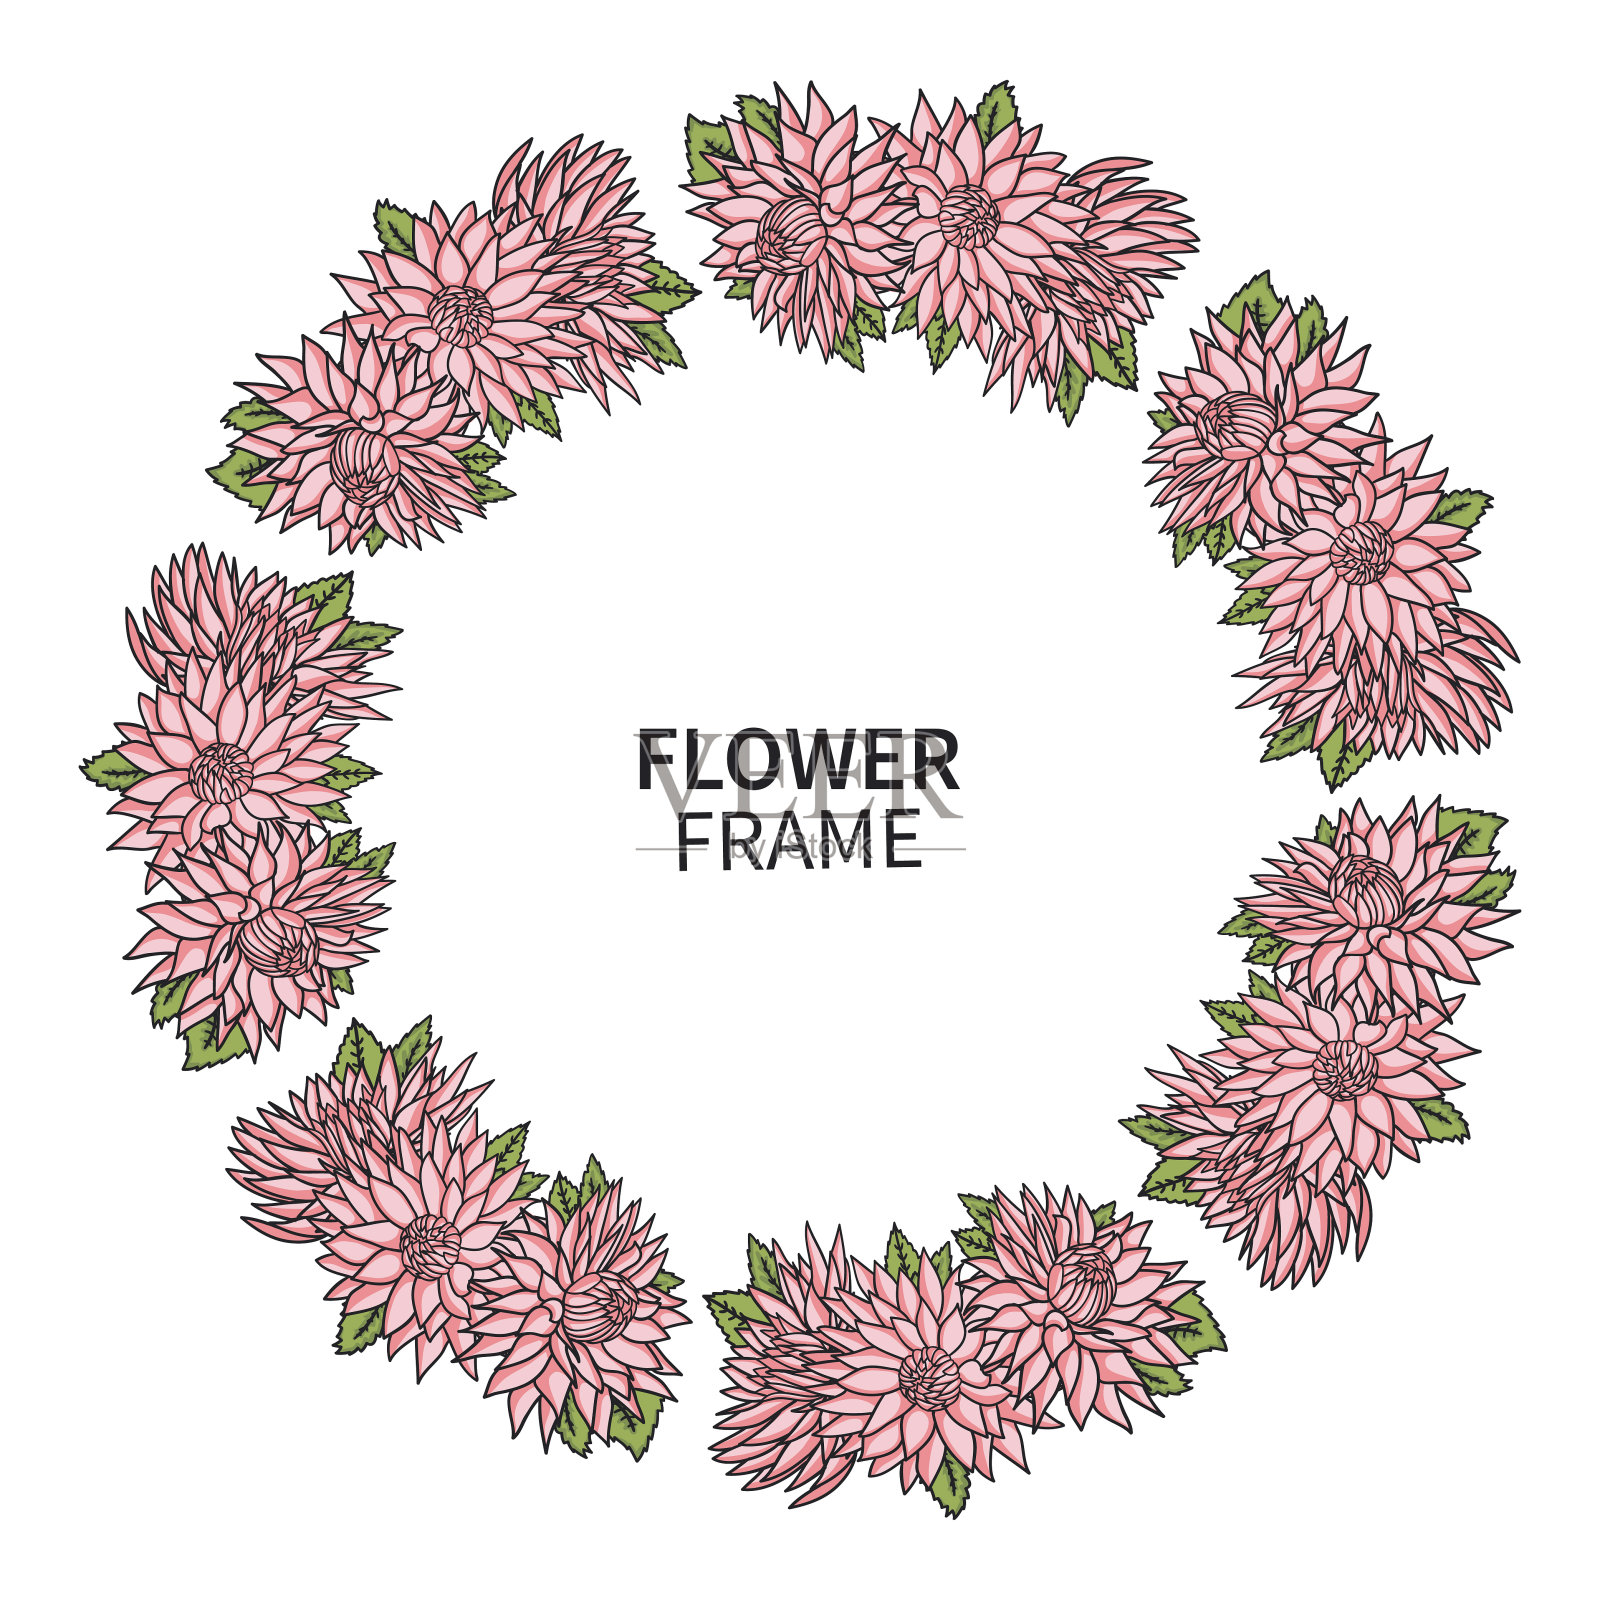 菊花框架。贺卡和请柬花圈印刷。美丽的花束与粉红色的紫菀。婚礼、母亲节等节日主题。插画图片素材